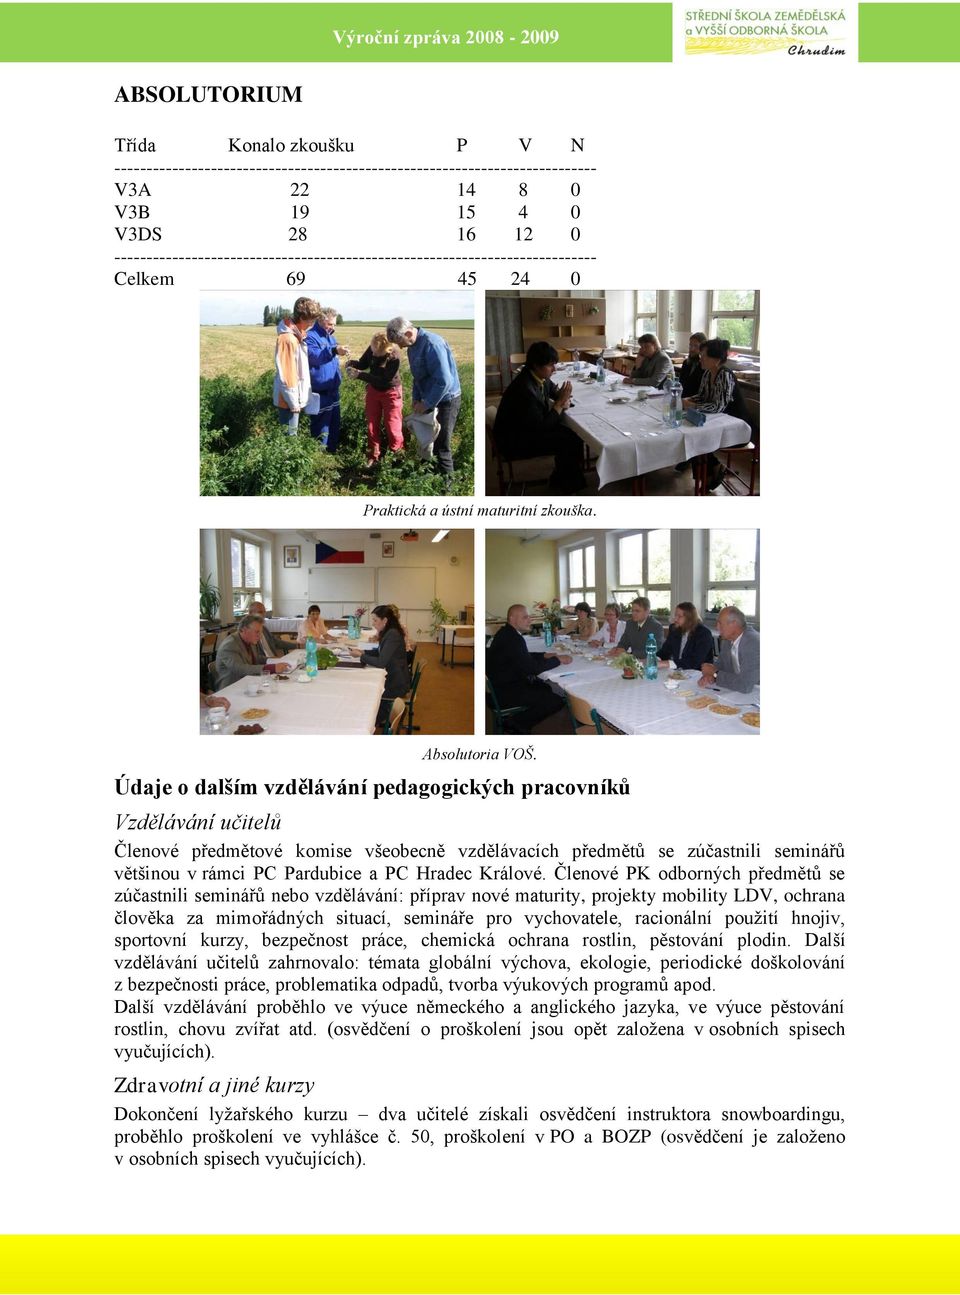 Údaje o dalším vzdělávání pedagogických pracovníků Vzdělávání učitelů Členové předmětové komise všeobecně vzdělávacích předmětů se zúčastnili seminářů většinou v rámci PC Pardubice a PC Hradec